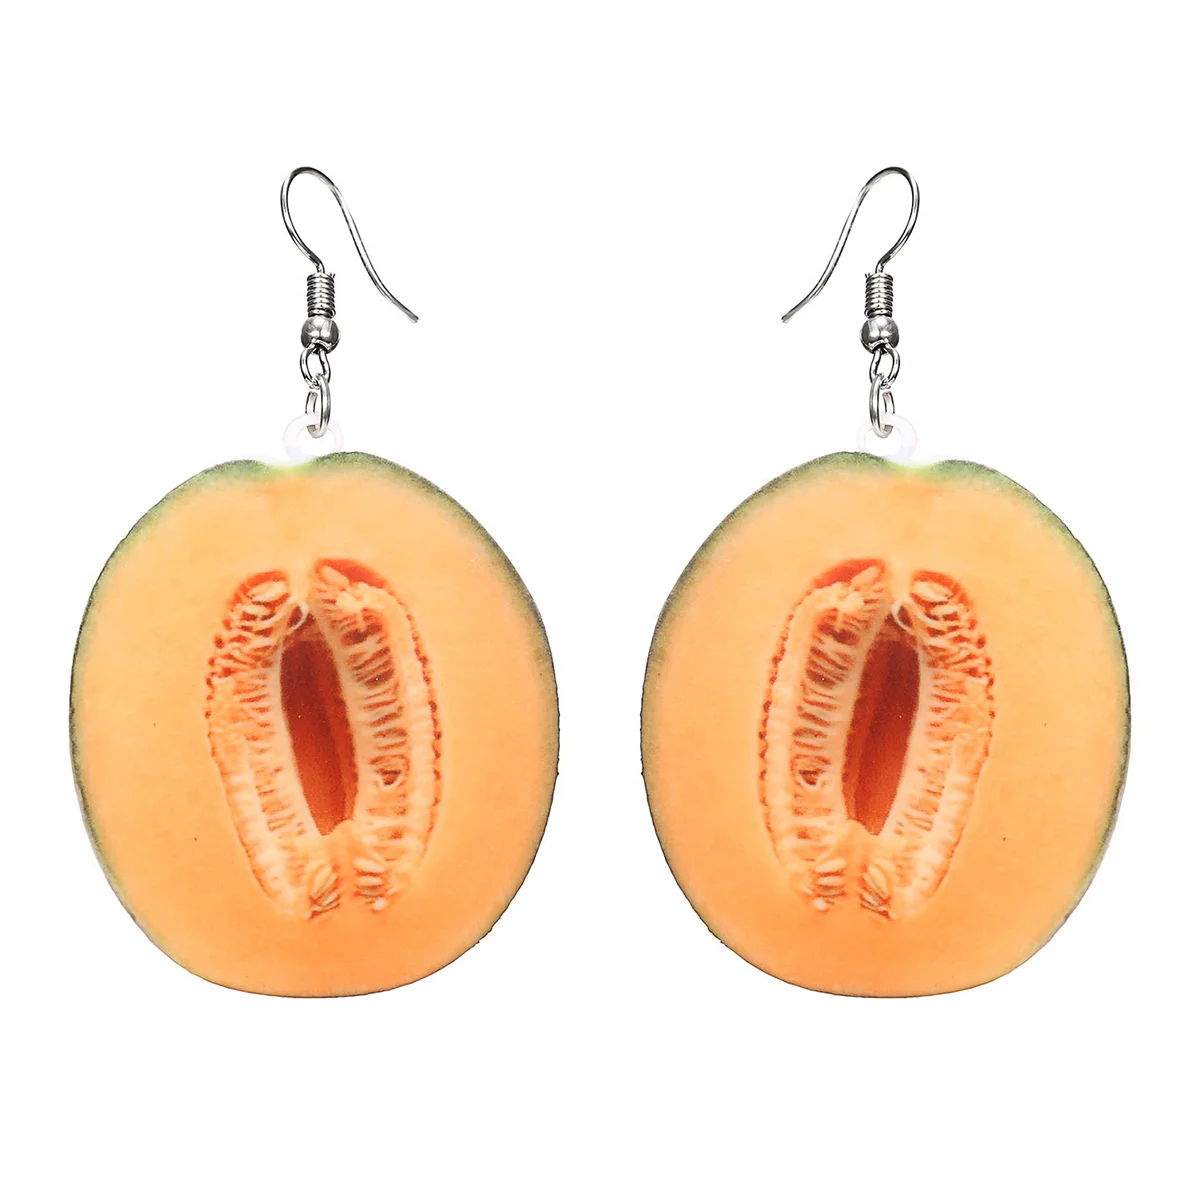 

Pineapple Earrings Avocado Jewellery Fruit Studs Mango Charm Women Hoops Unique Accessories